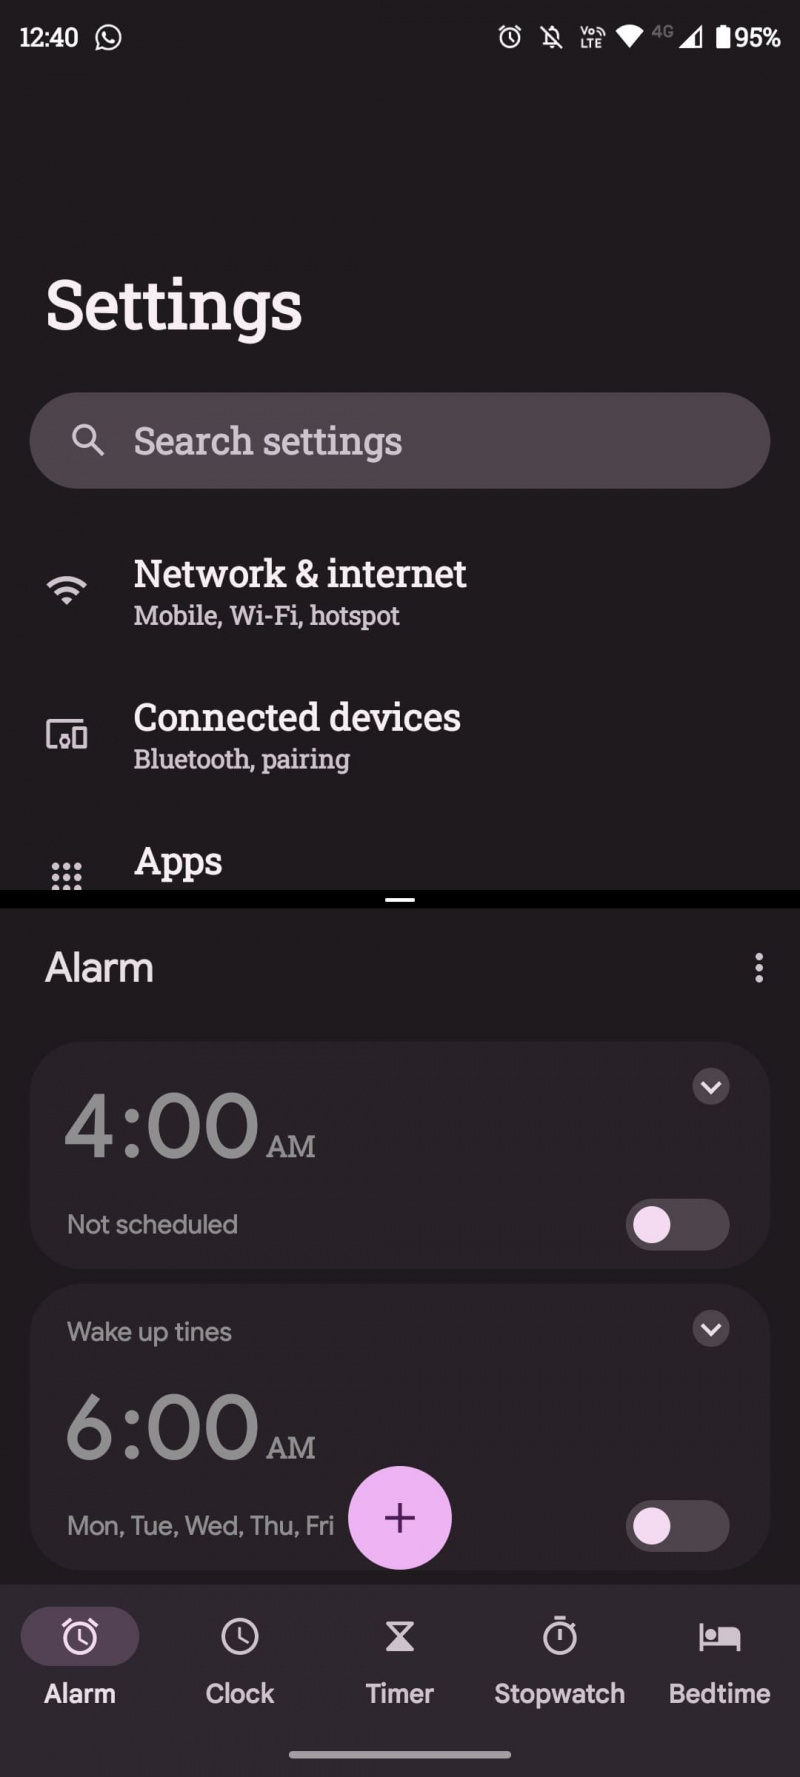   Configuración de Android y pantalla dividida de alarma